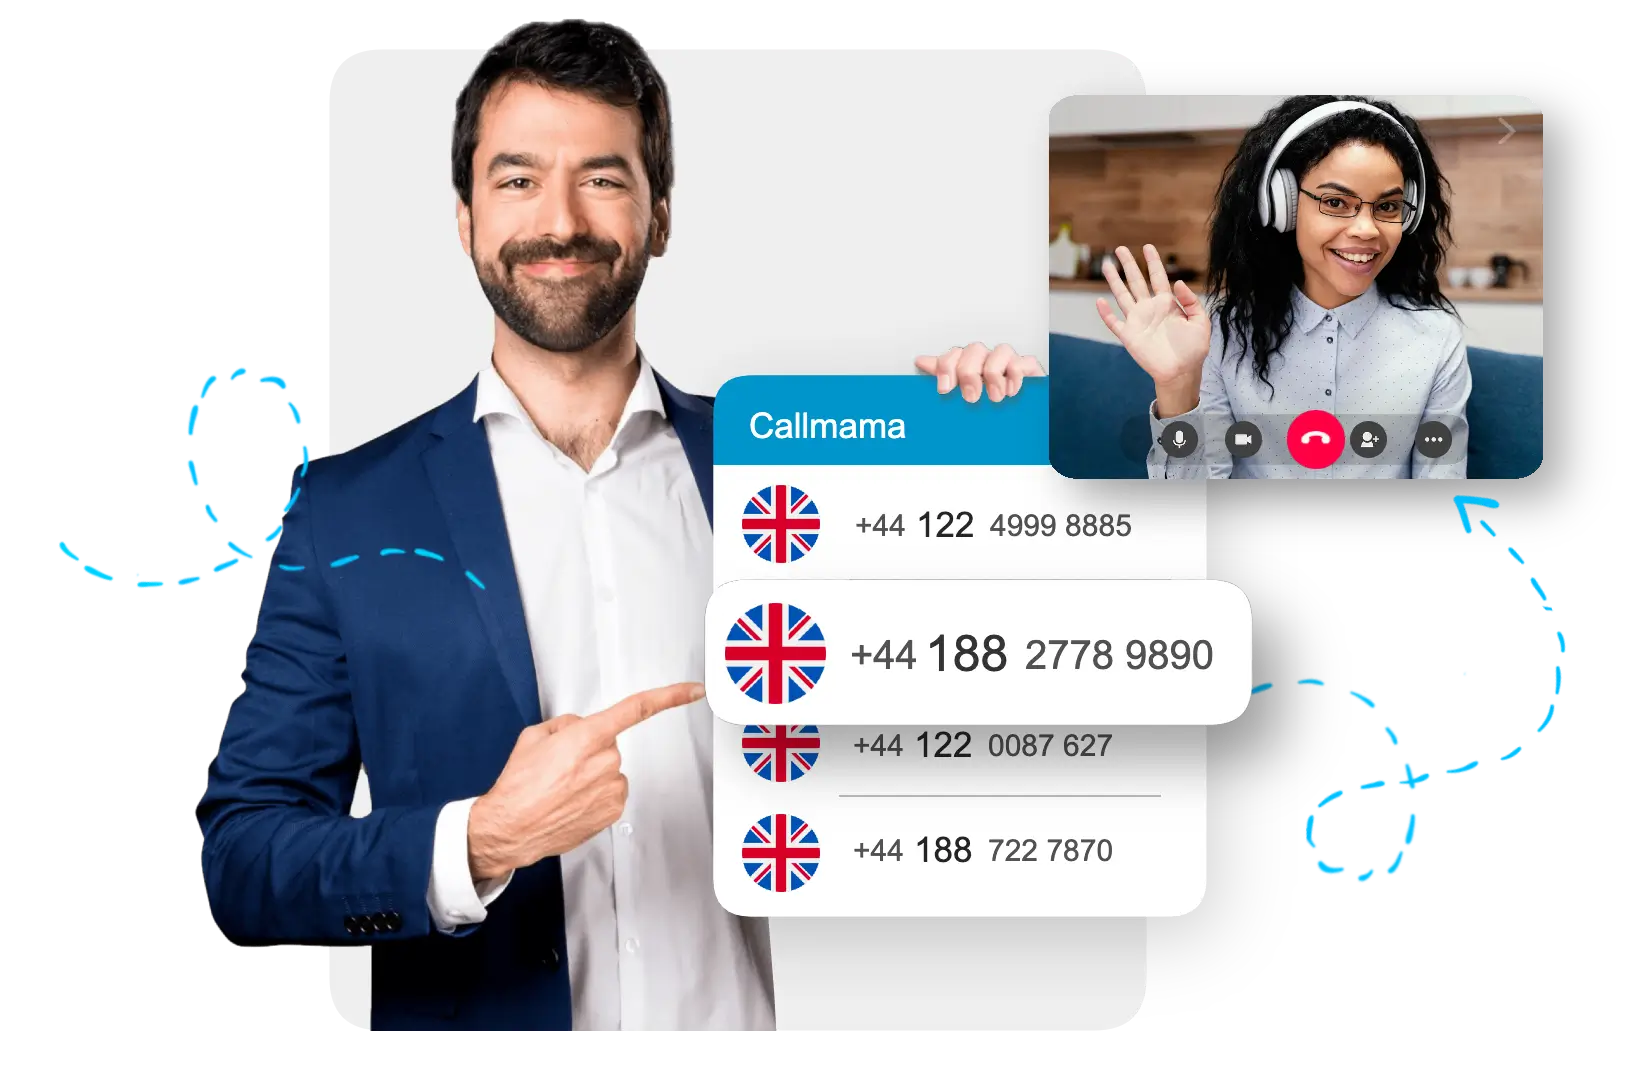 UK virtual phone number